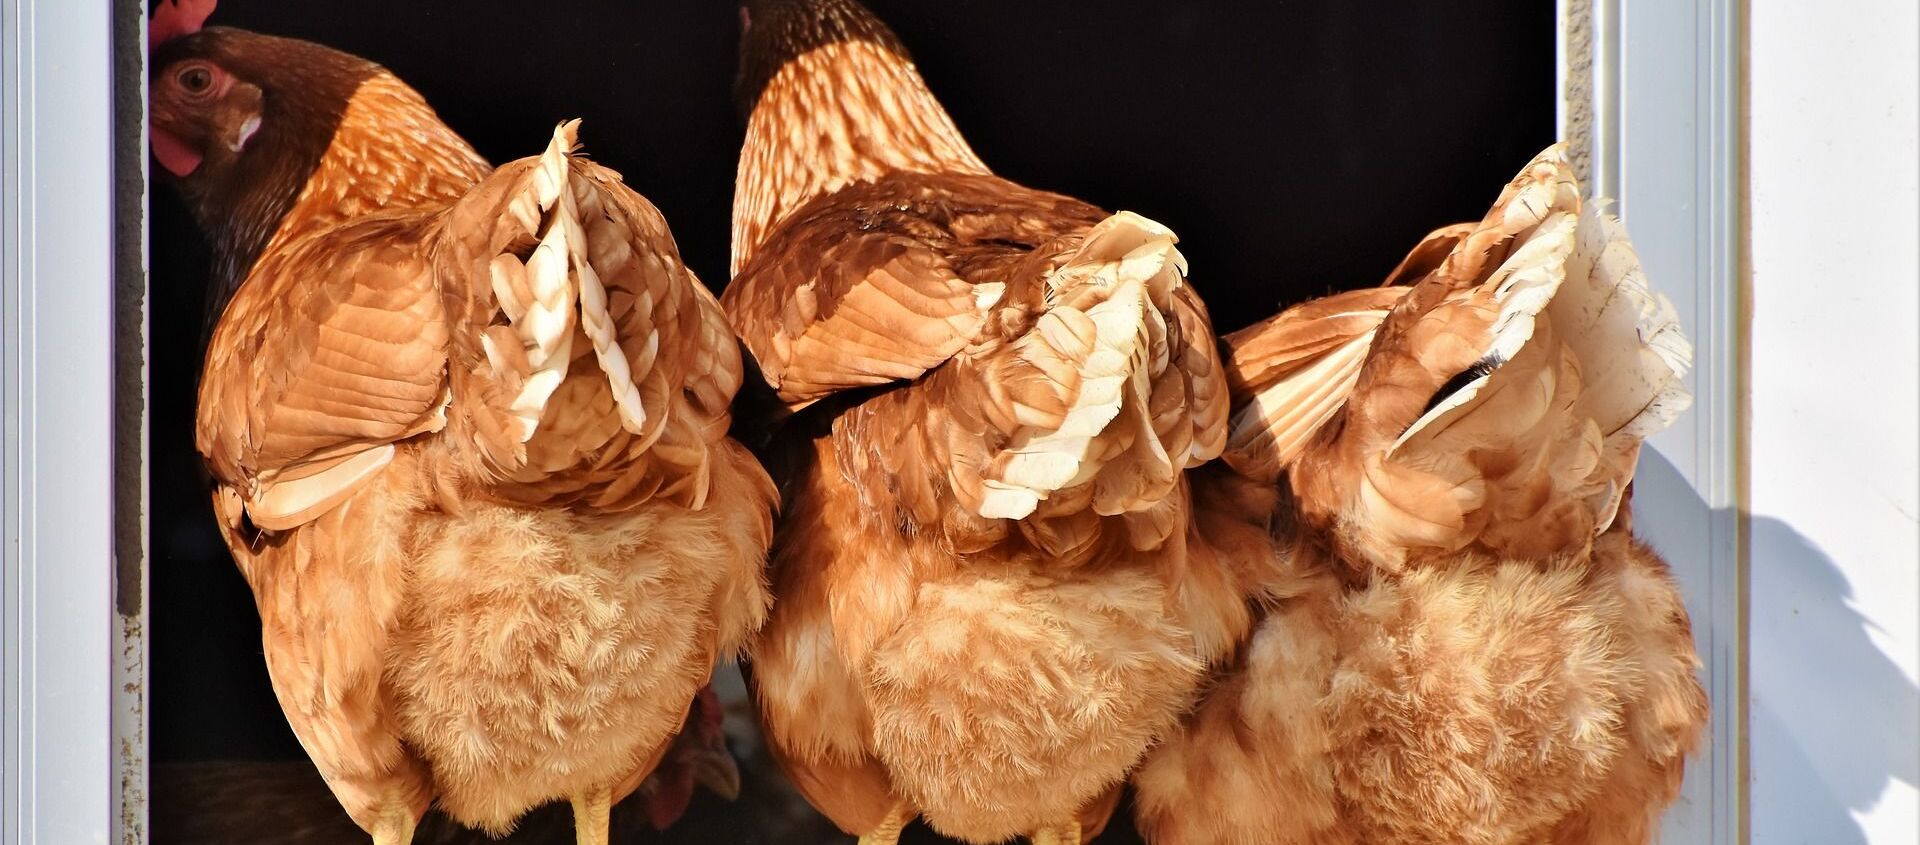 آیا قیمت مرغ در فصل سرد سال افزایش پیدا خواهد کرد؟ - اسپوتنیک ایران  , 1920, 03.08.2021